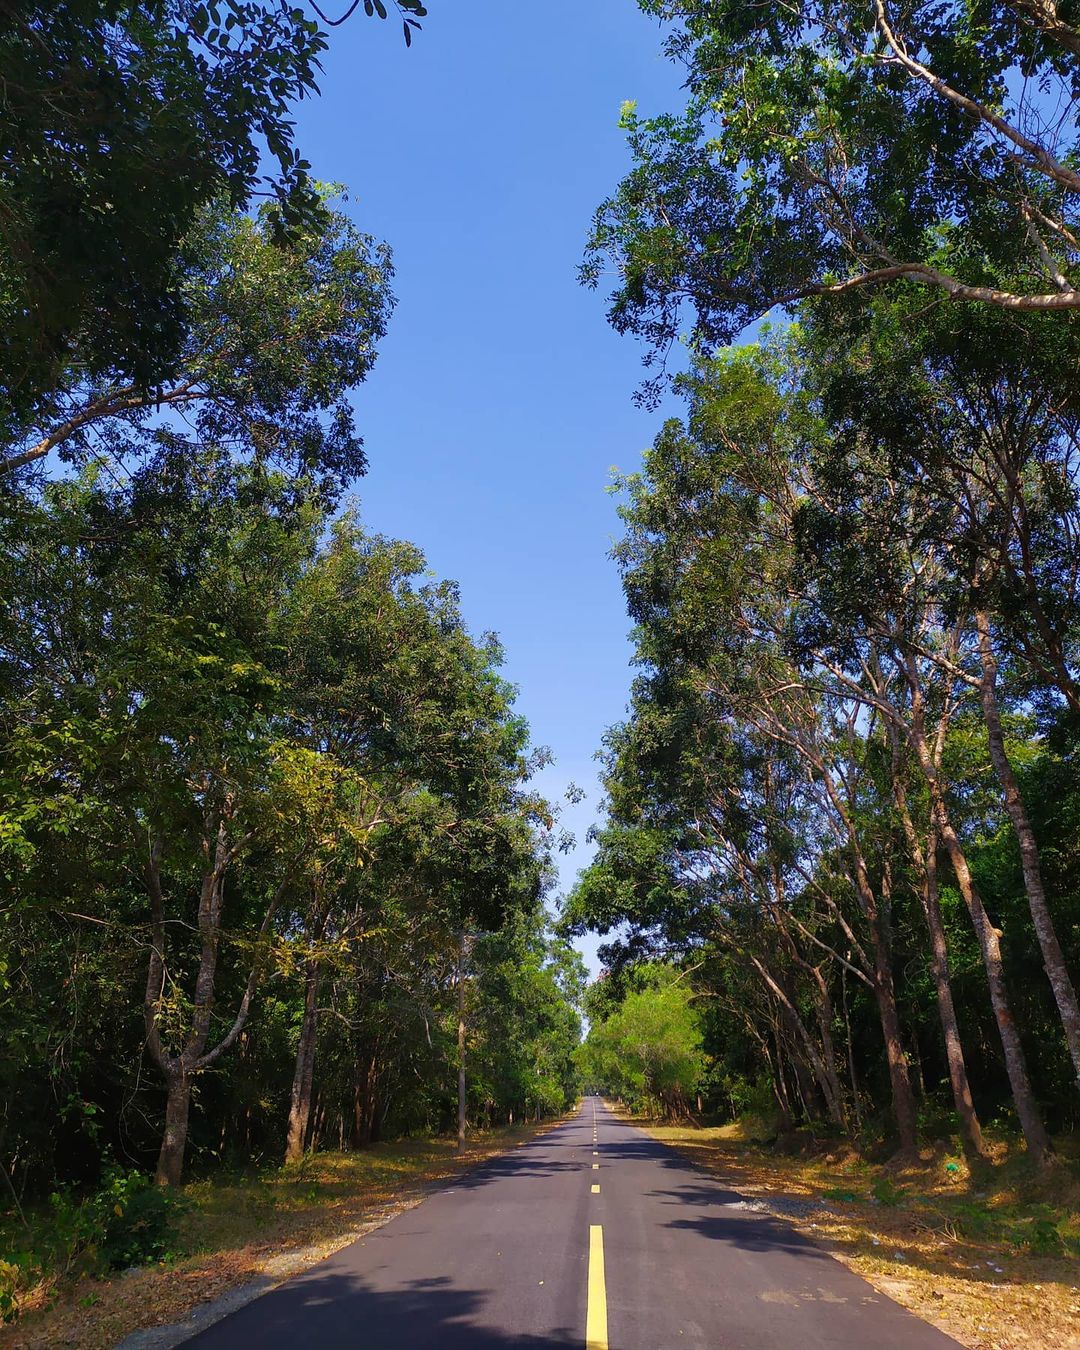 Khu rừng này ở Bà Rịa-Vũng Tàu, cách Sài Gòn 150km đẹp huyền bí kiểu gì mà nhiều người vô xem? - Ảnh 5.